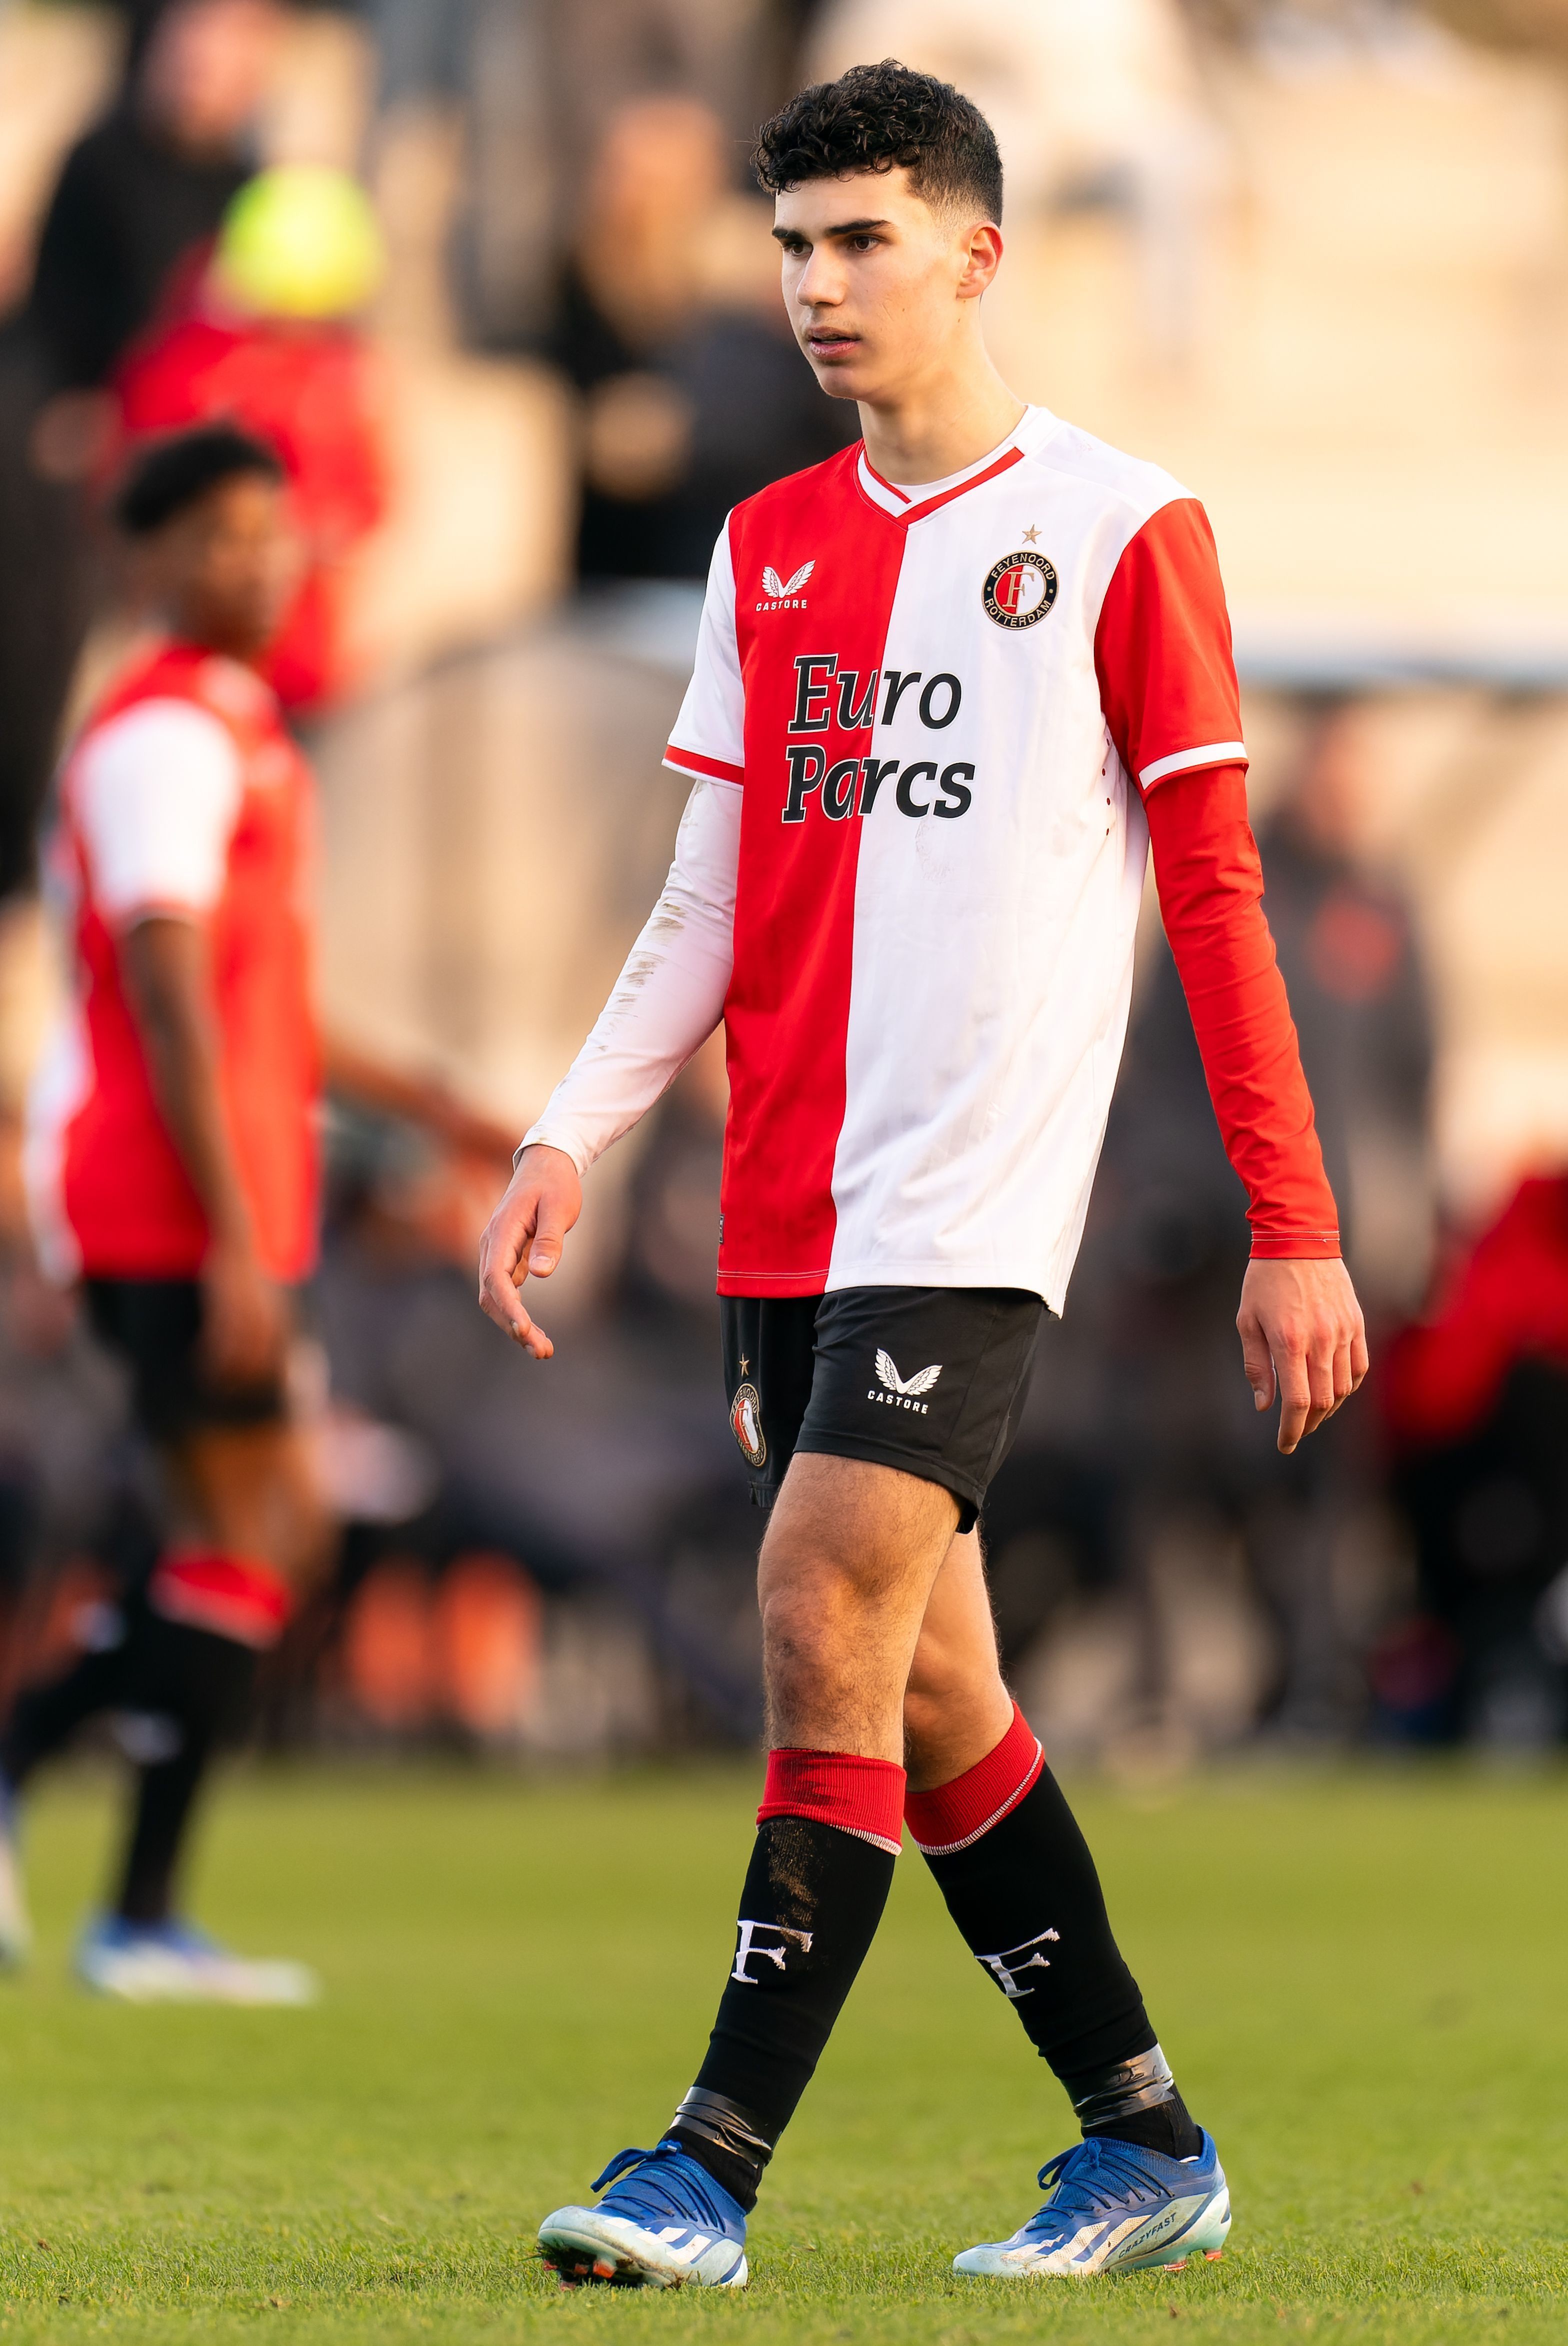 Shaqueel van Persie ist im Akademieteam von Feyenoord und wird von seinem Vater trainiert